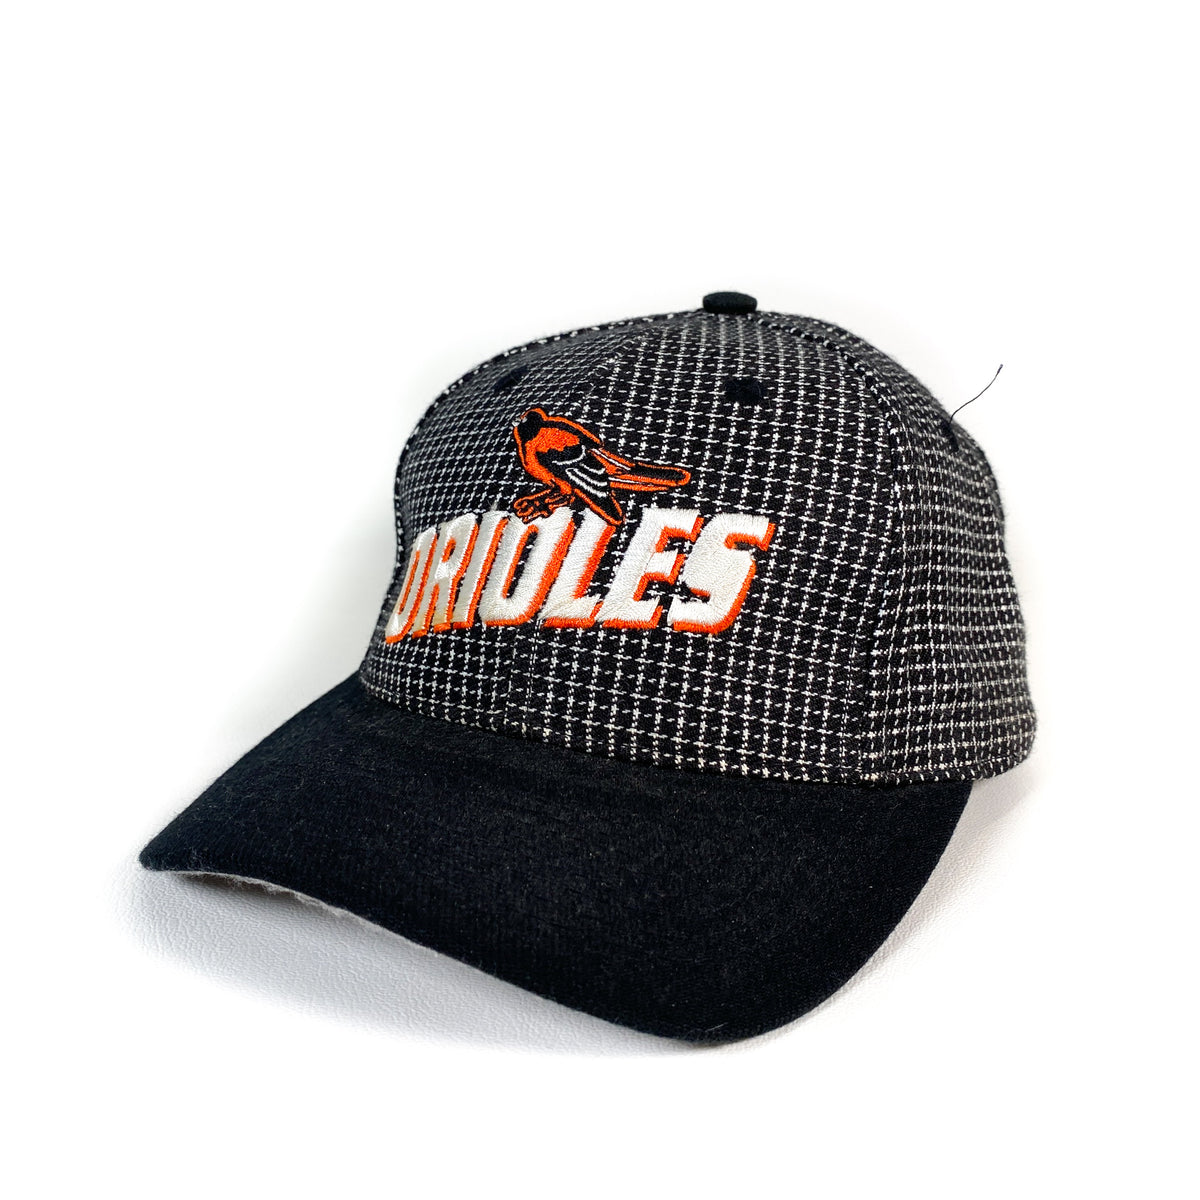 Vintage 90's Baltimore Orioles Hat – CobbleStore Vintage